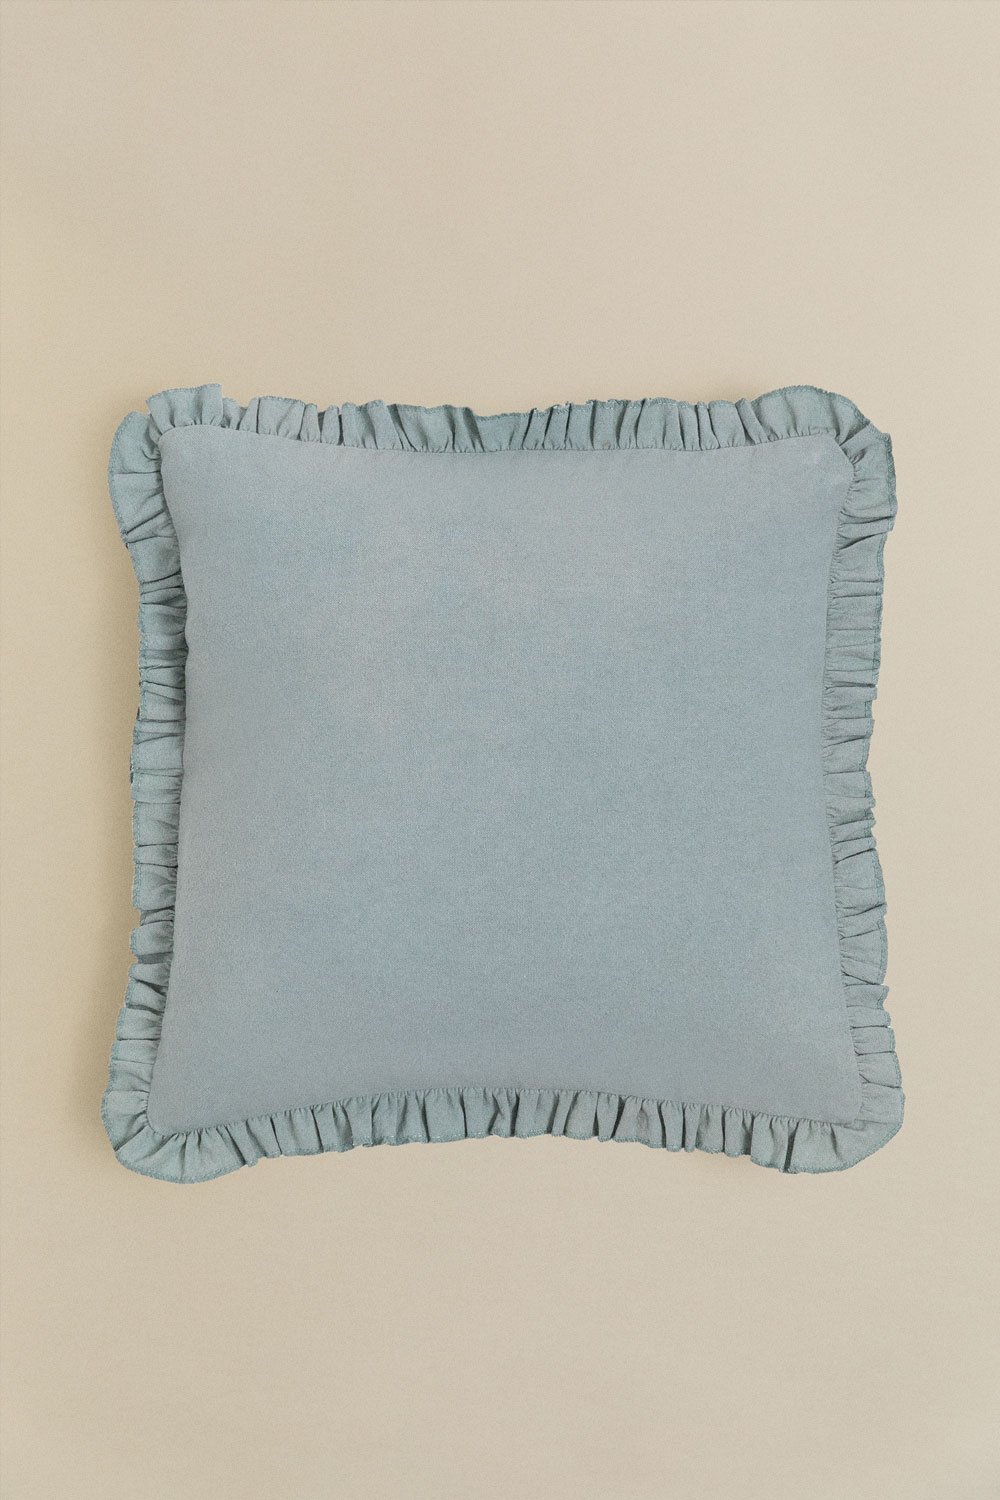 Cuscino quadrato in cotone (40x40 cm) Arassu, immagine della galleria 1